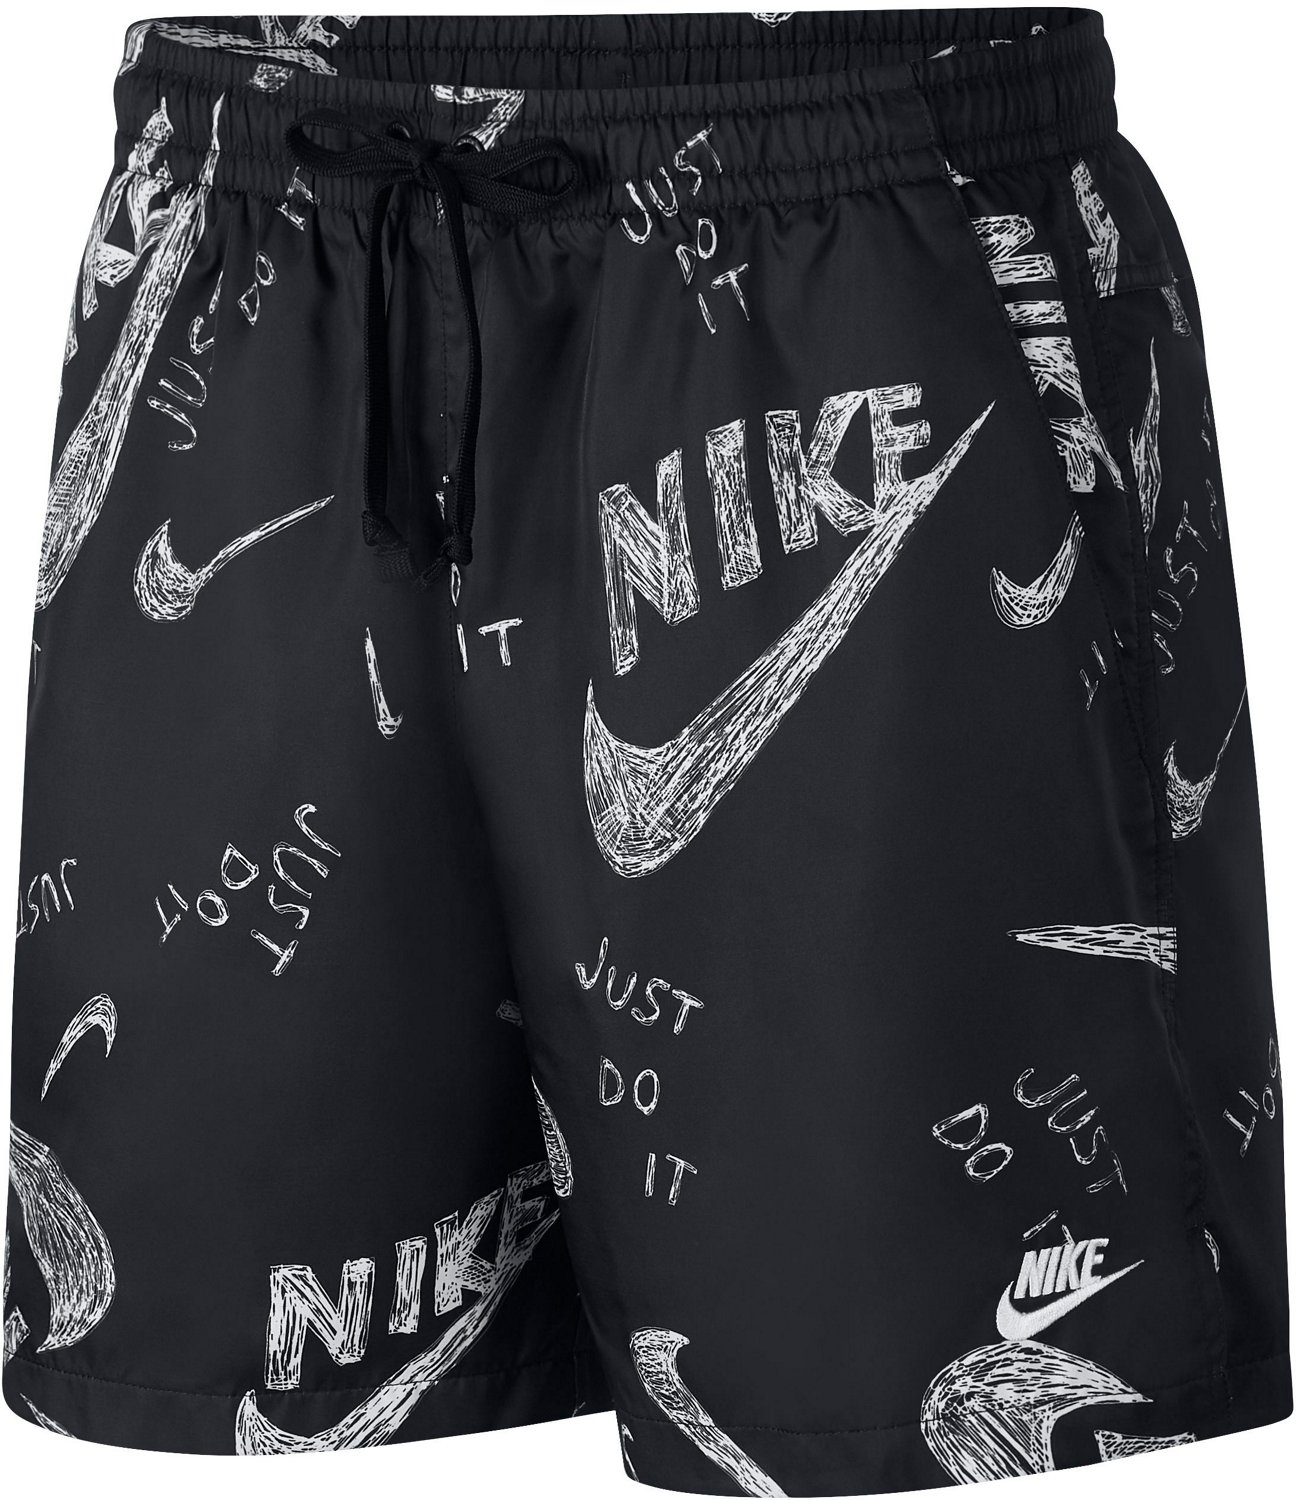 Nike Men's Sportswear AOP Shorts 5 in 